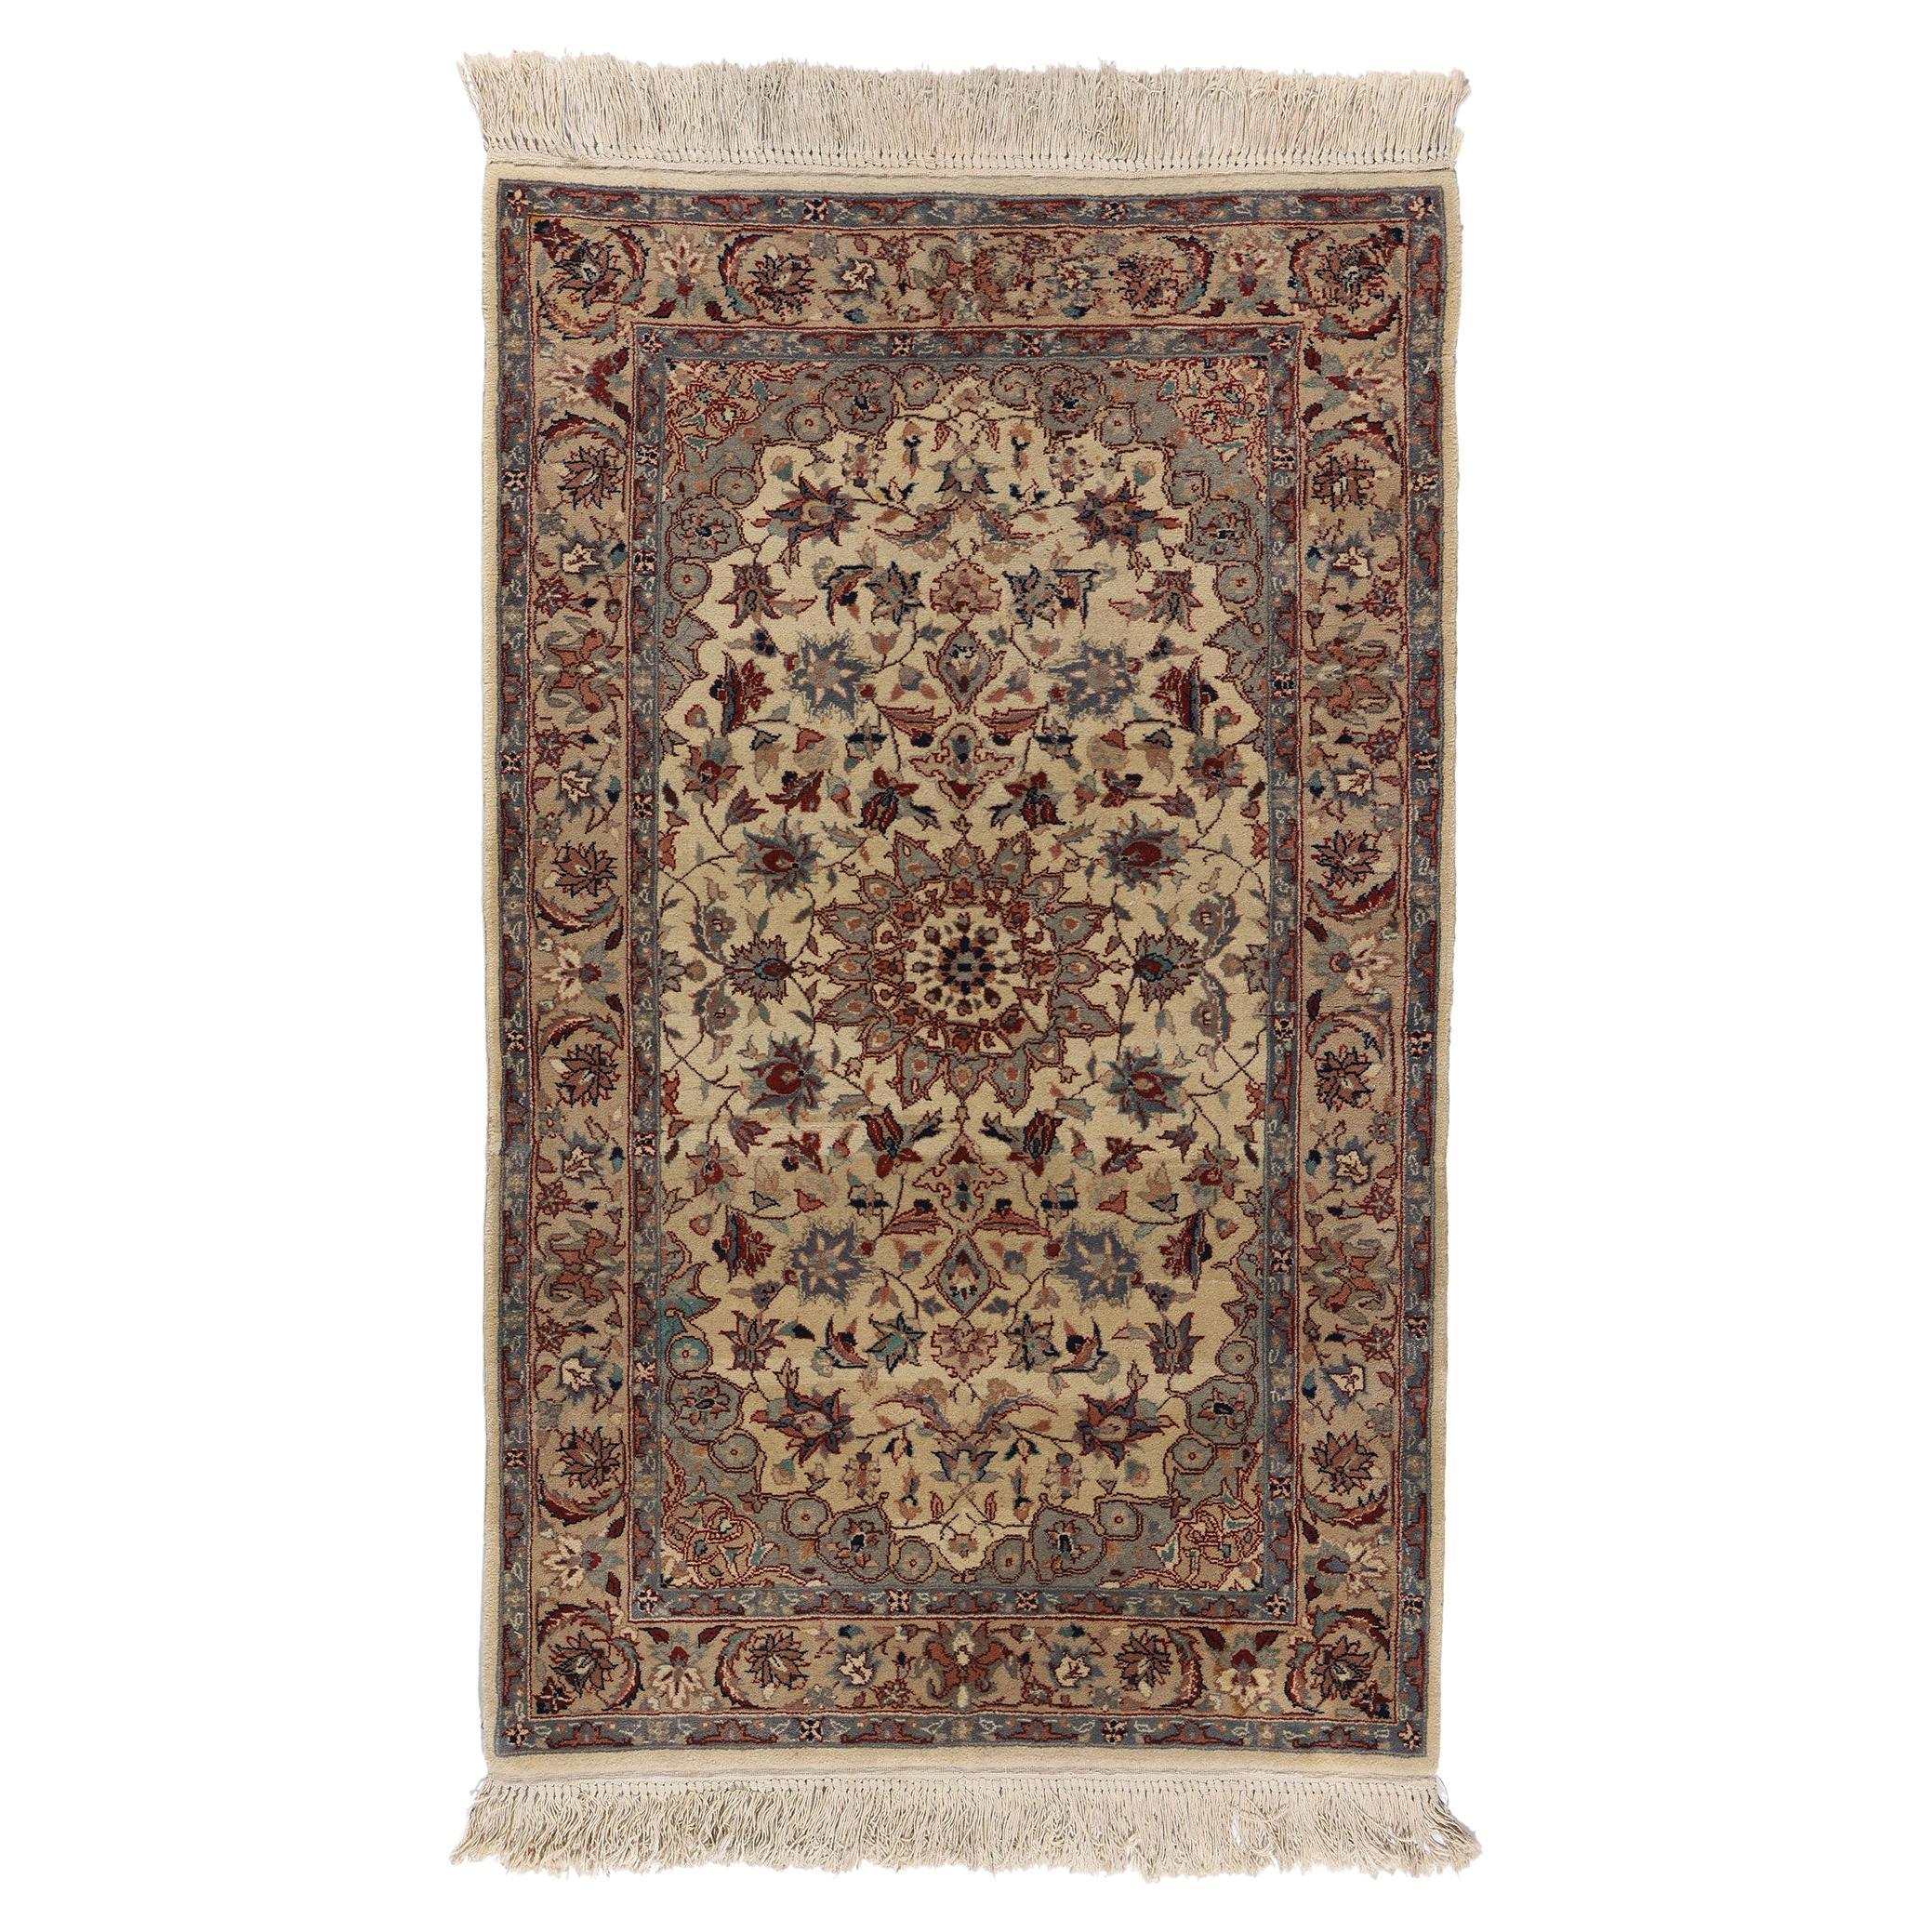 Chinesischer Tabriz-Teppich im traditionellen Stil